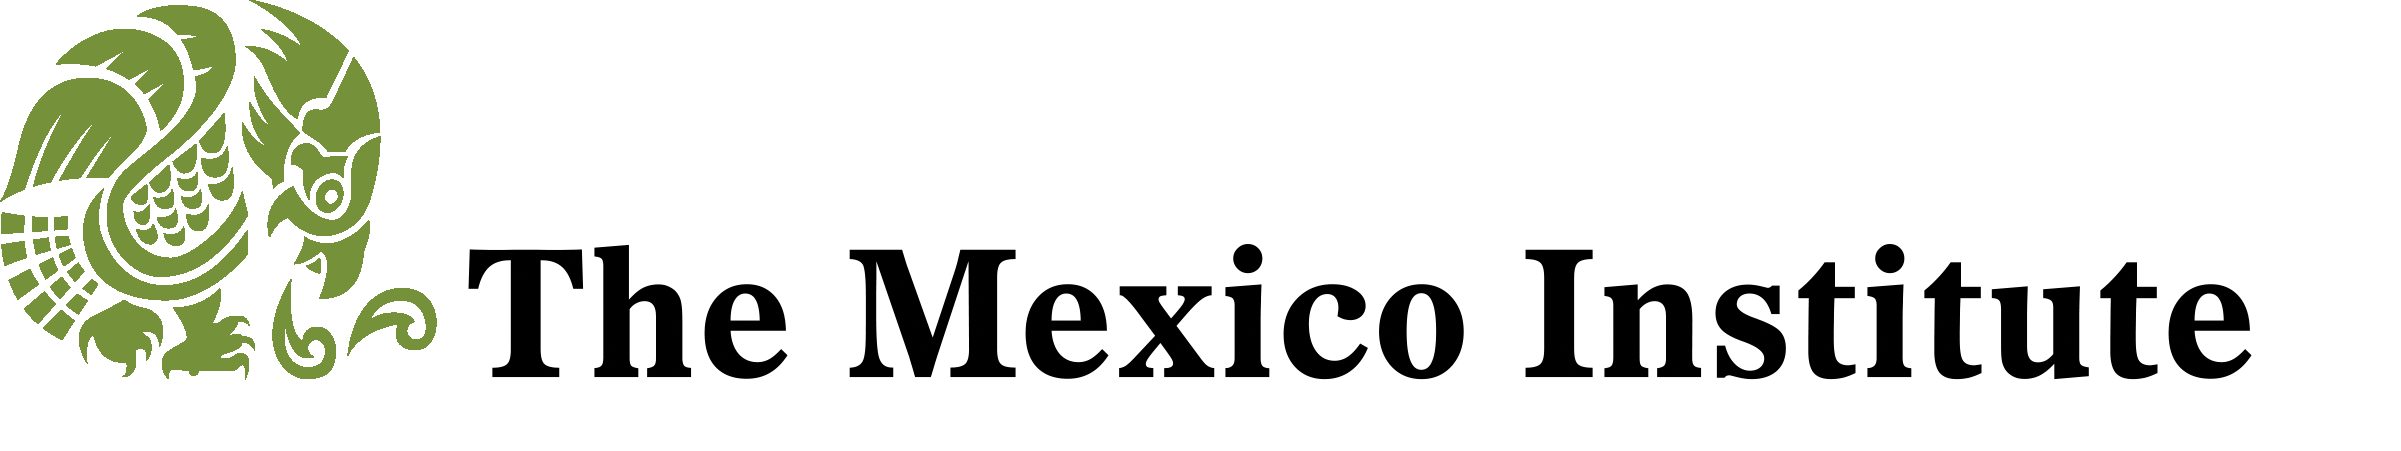 Black'n Logo - Logo TMI Eagle Black n white & Green (1) ~ The Mexico Institute